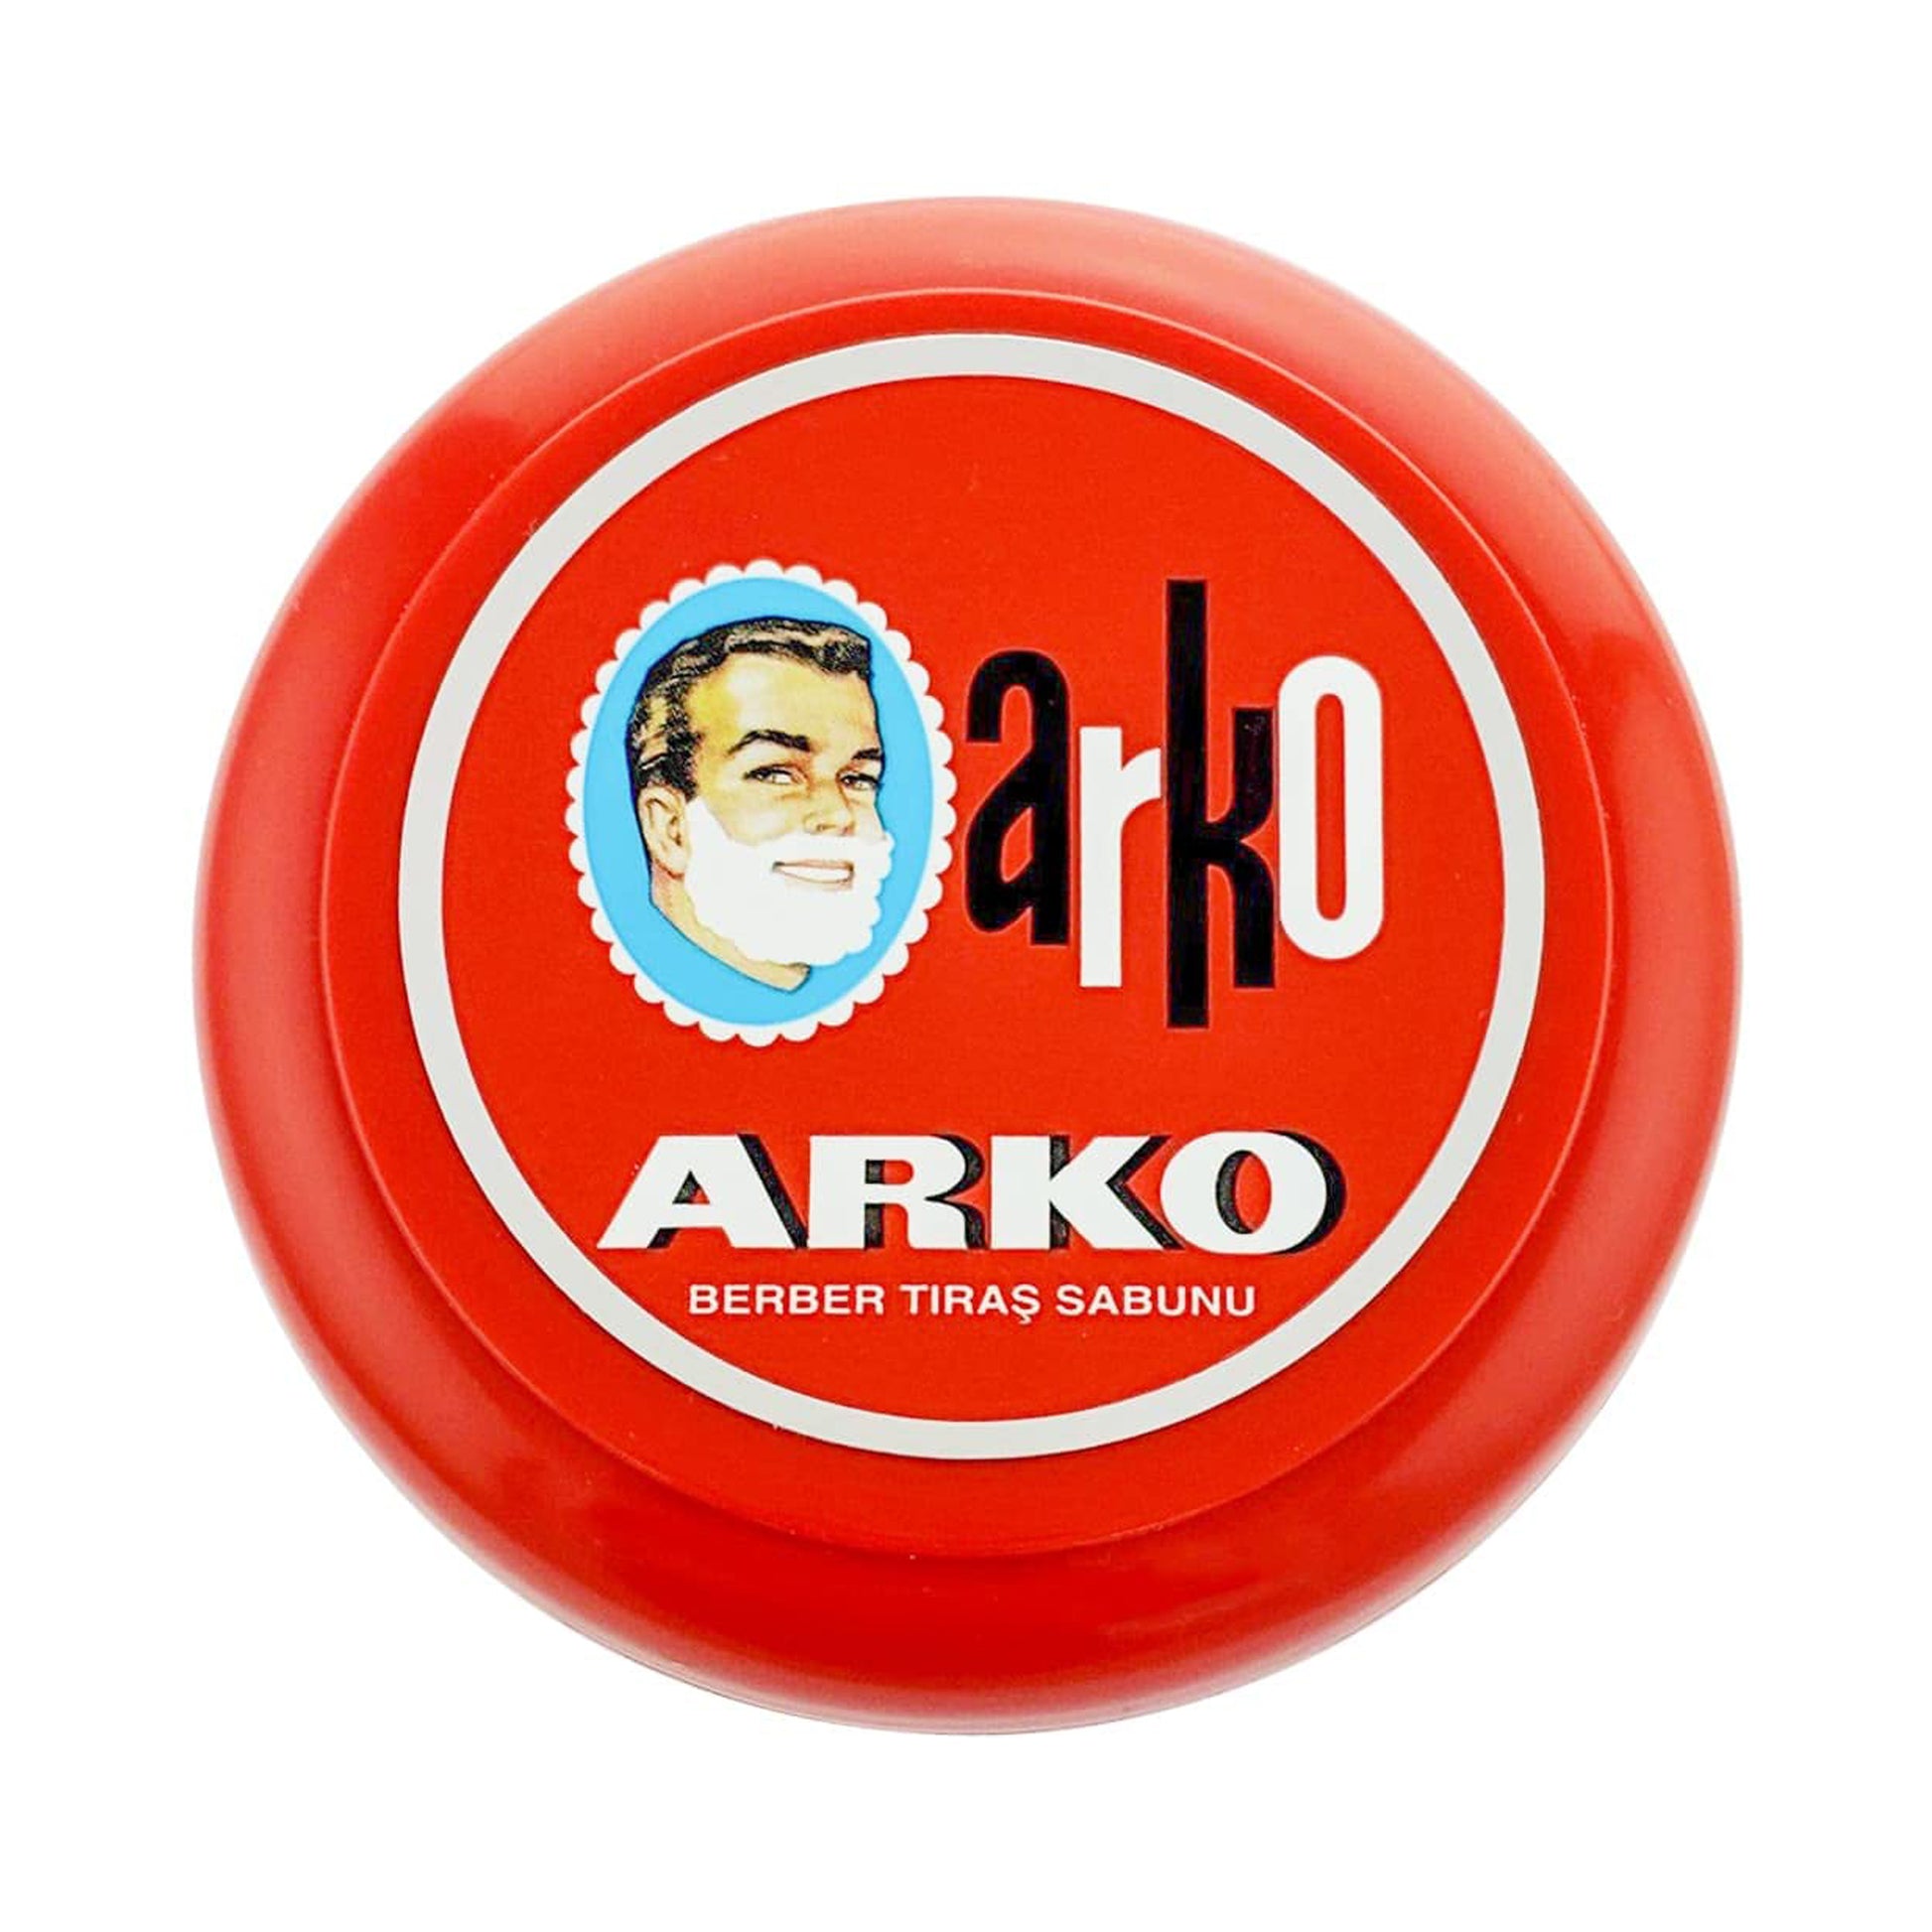 Arko Shaving Soap Bowl 90 g